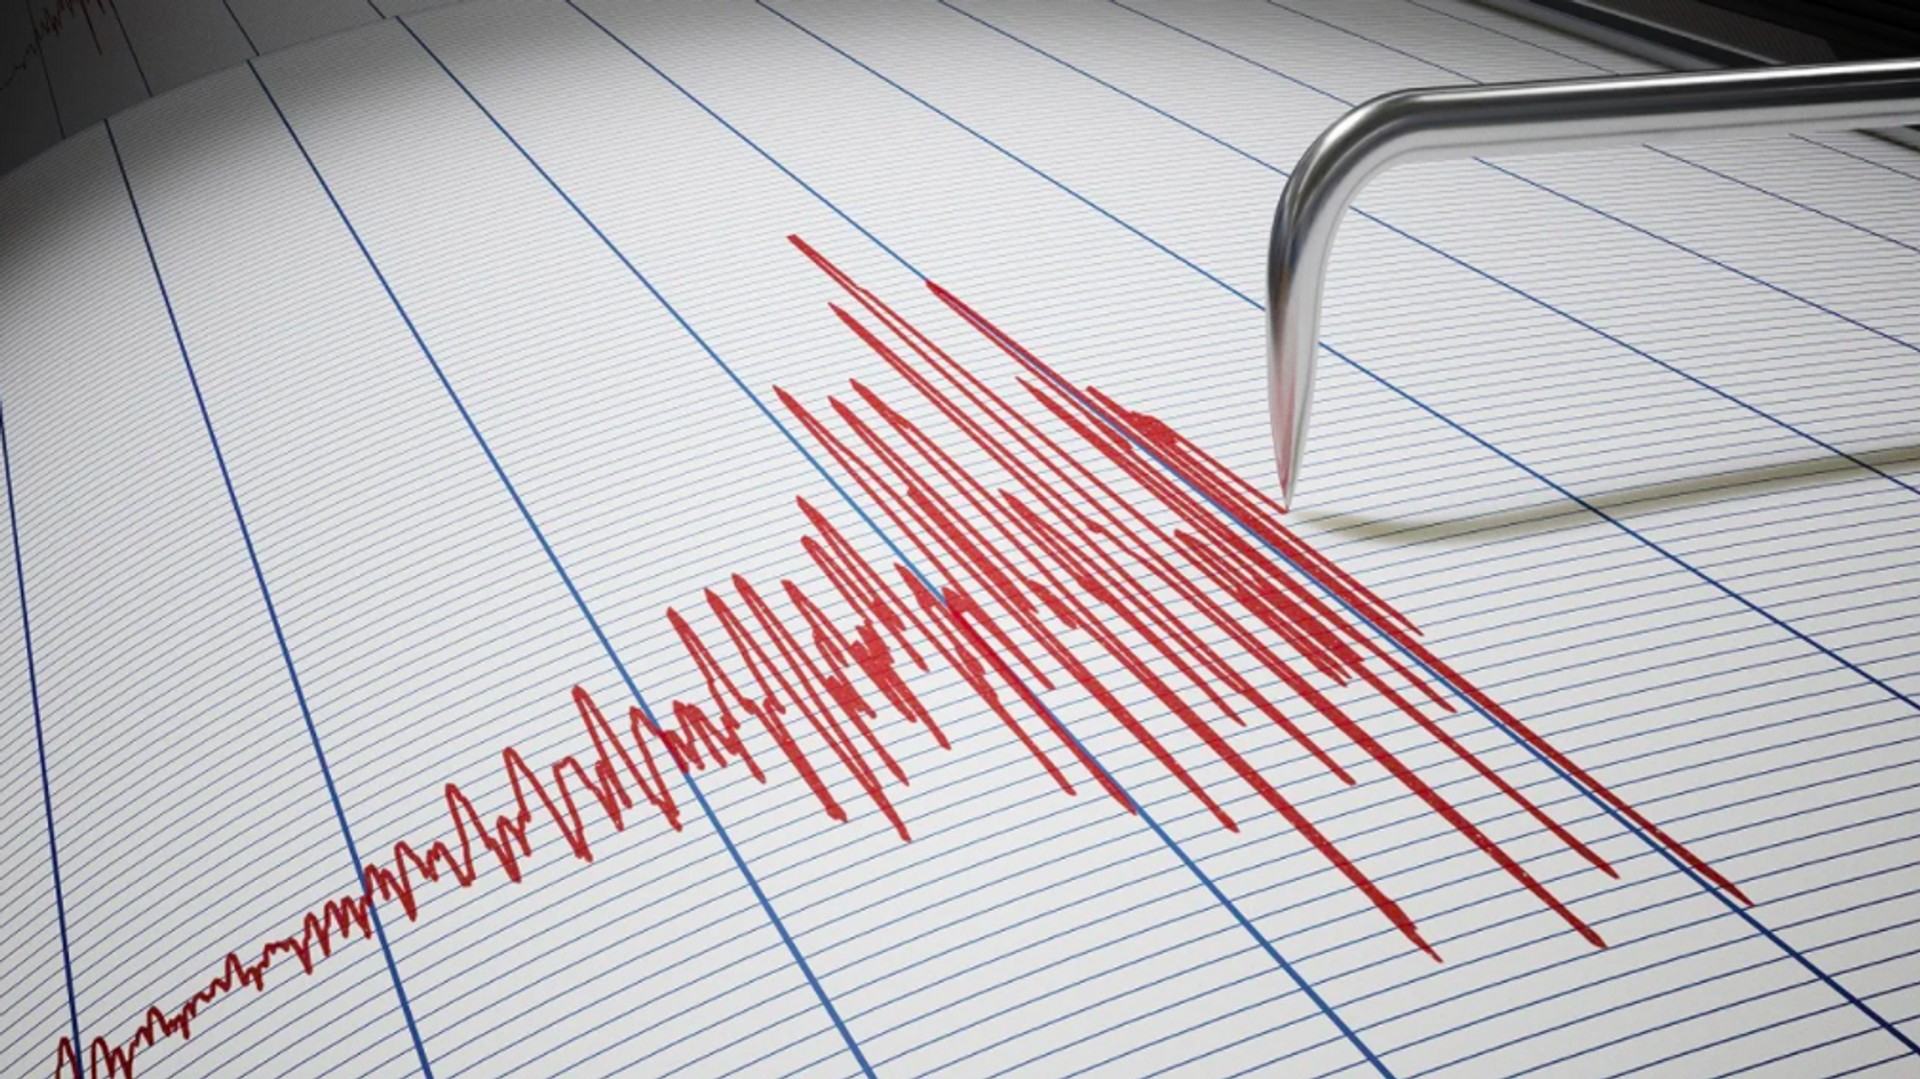 Marmara Denizi'nde 3,1 büyüklüğünde deprem